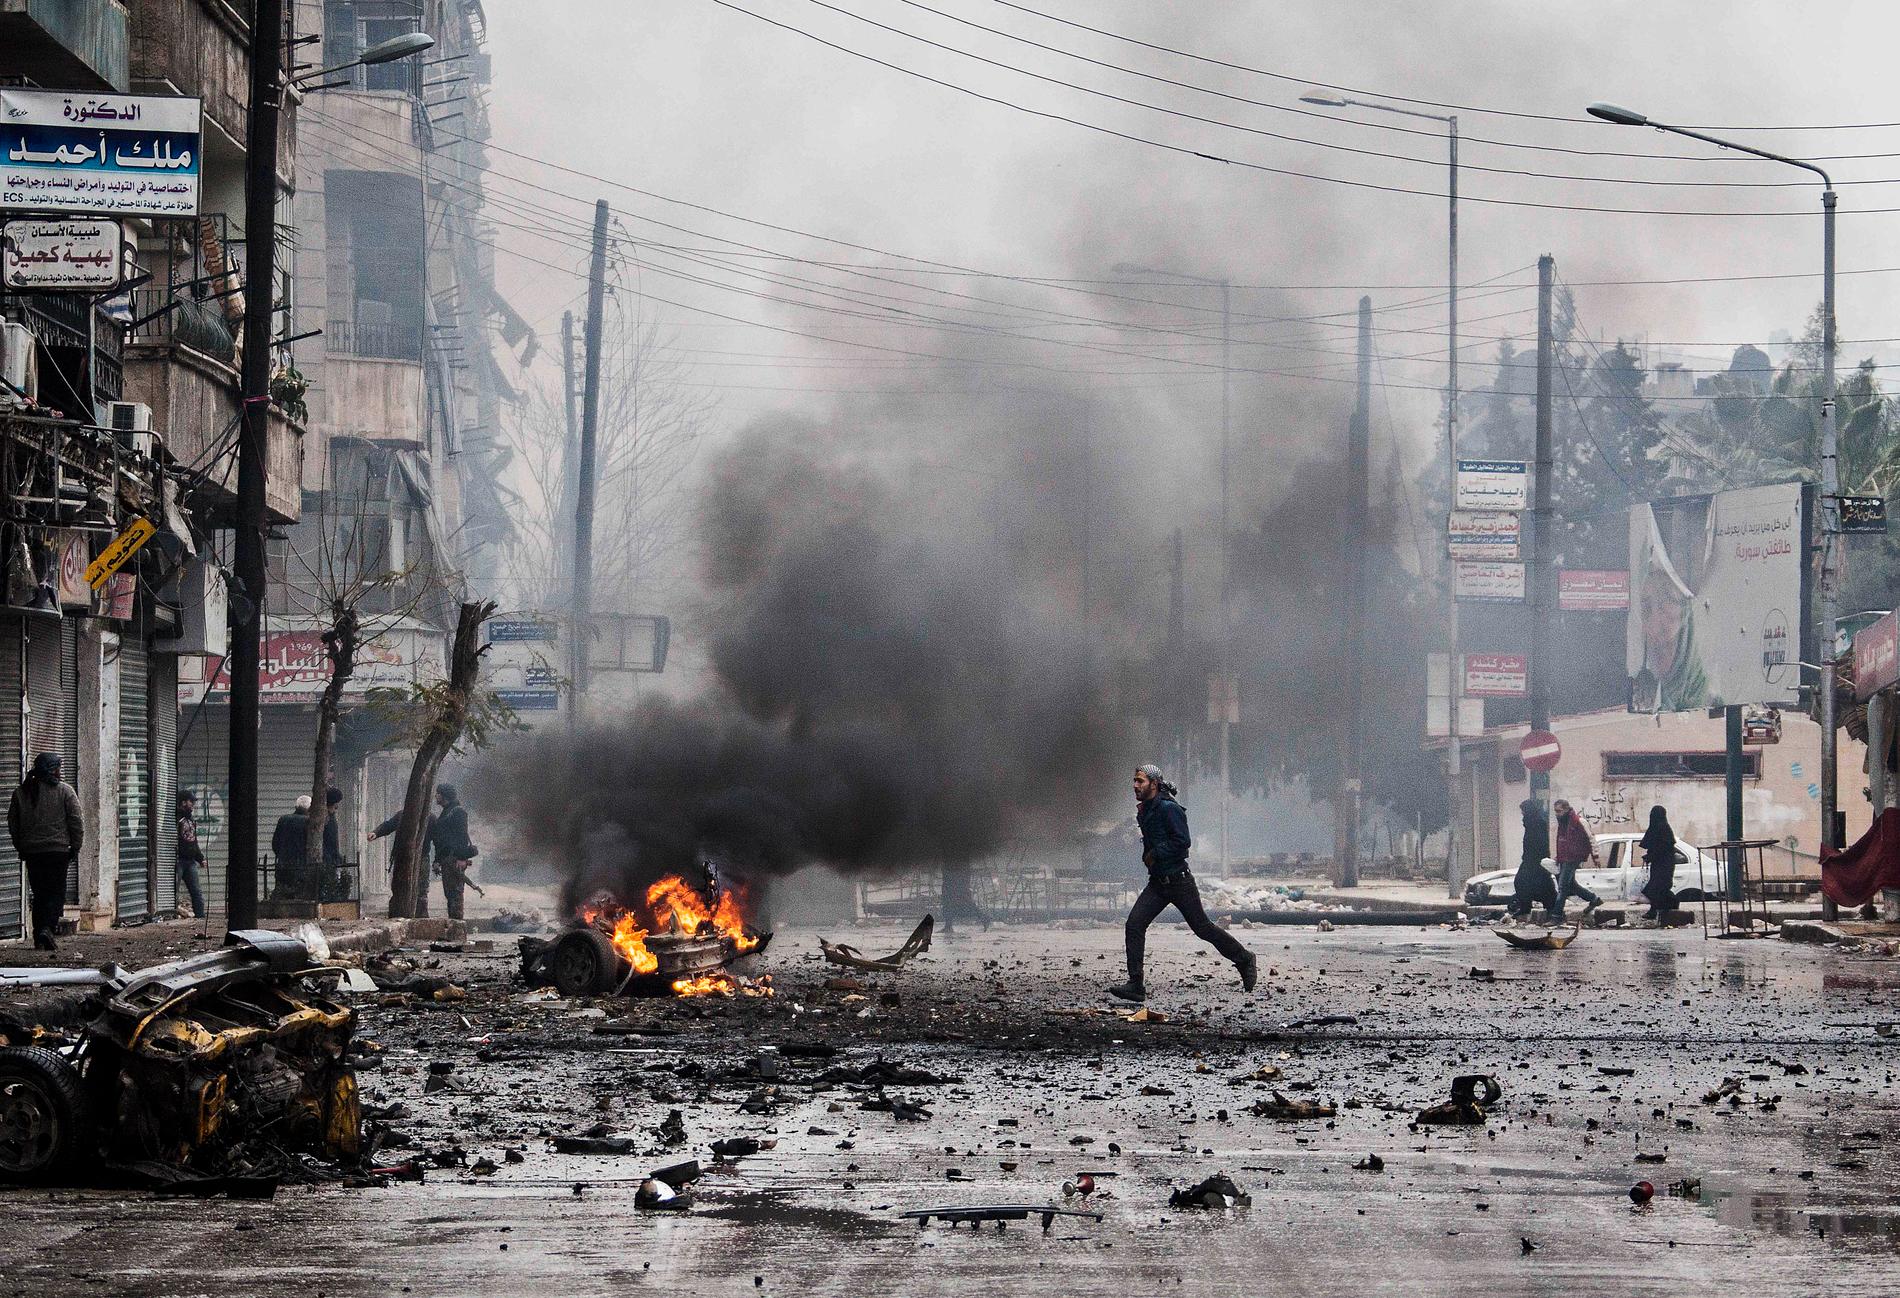 Aleppo 2012. Staden var en av de sista där upproret startade. Striden har varit hårda.